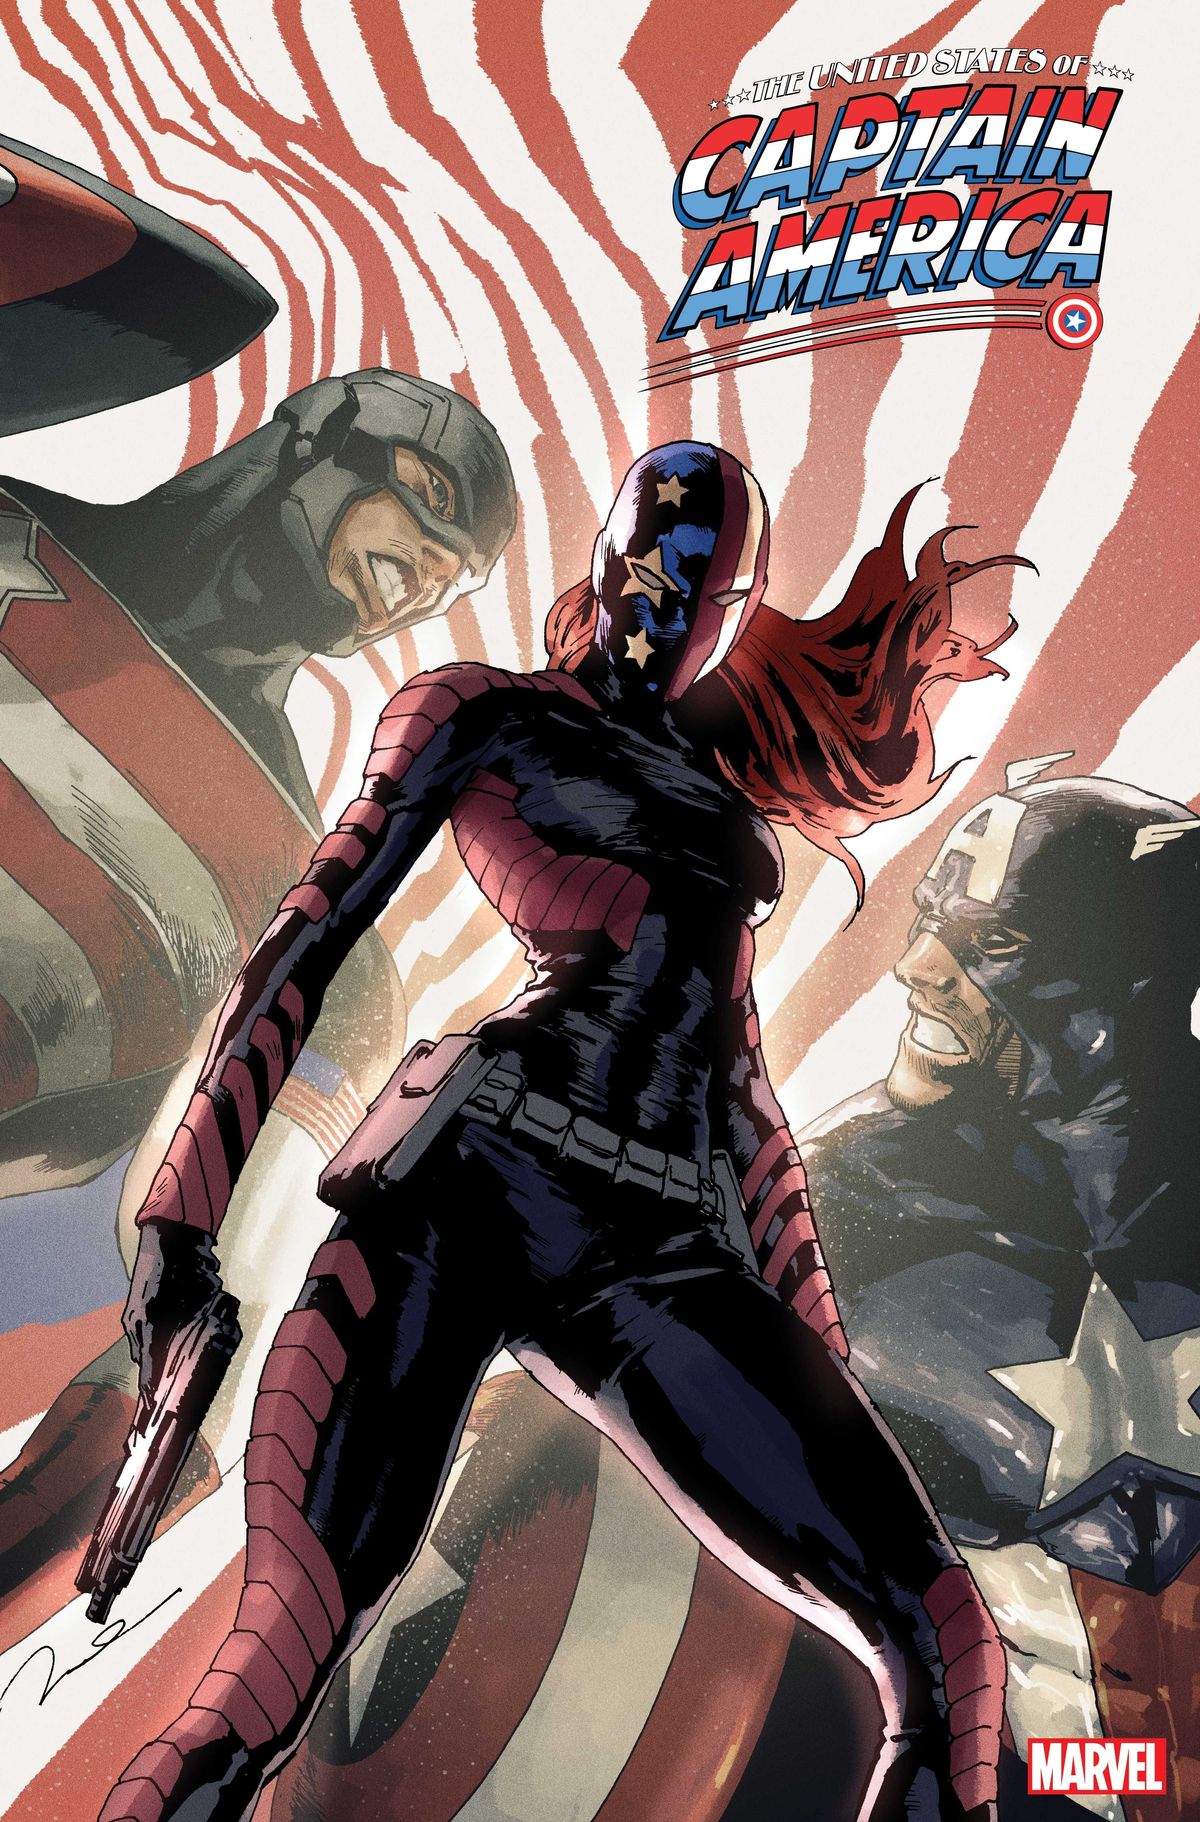 Captain America mới nhất của Marvel là một phụ nữ Mỹ gốc Philippines ở độ tuổi đại học